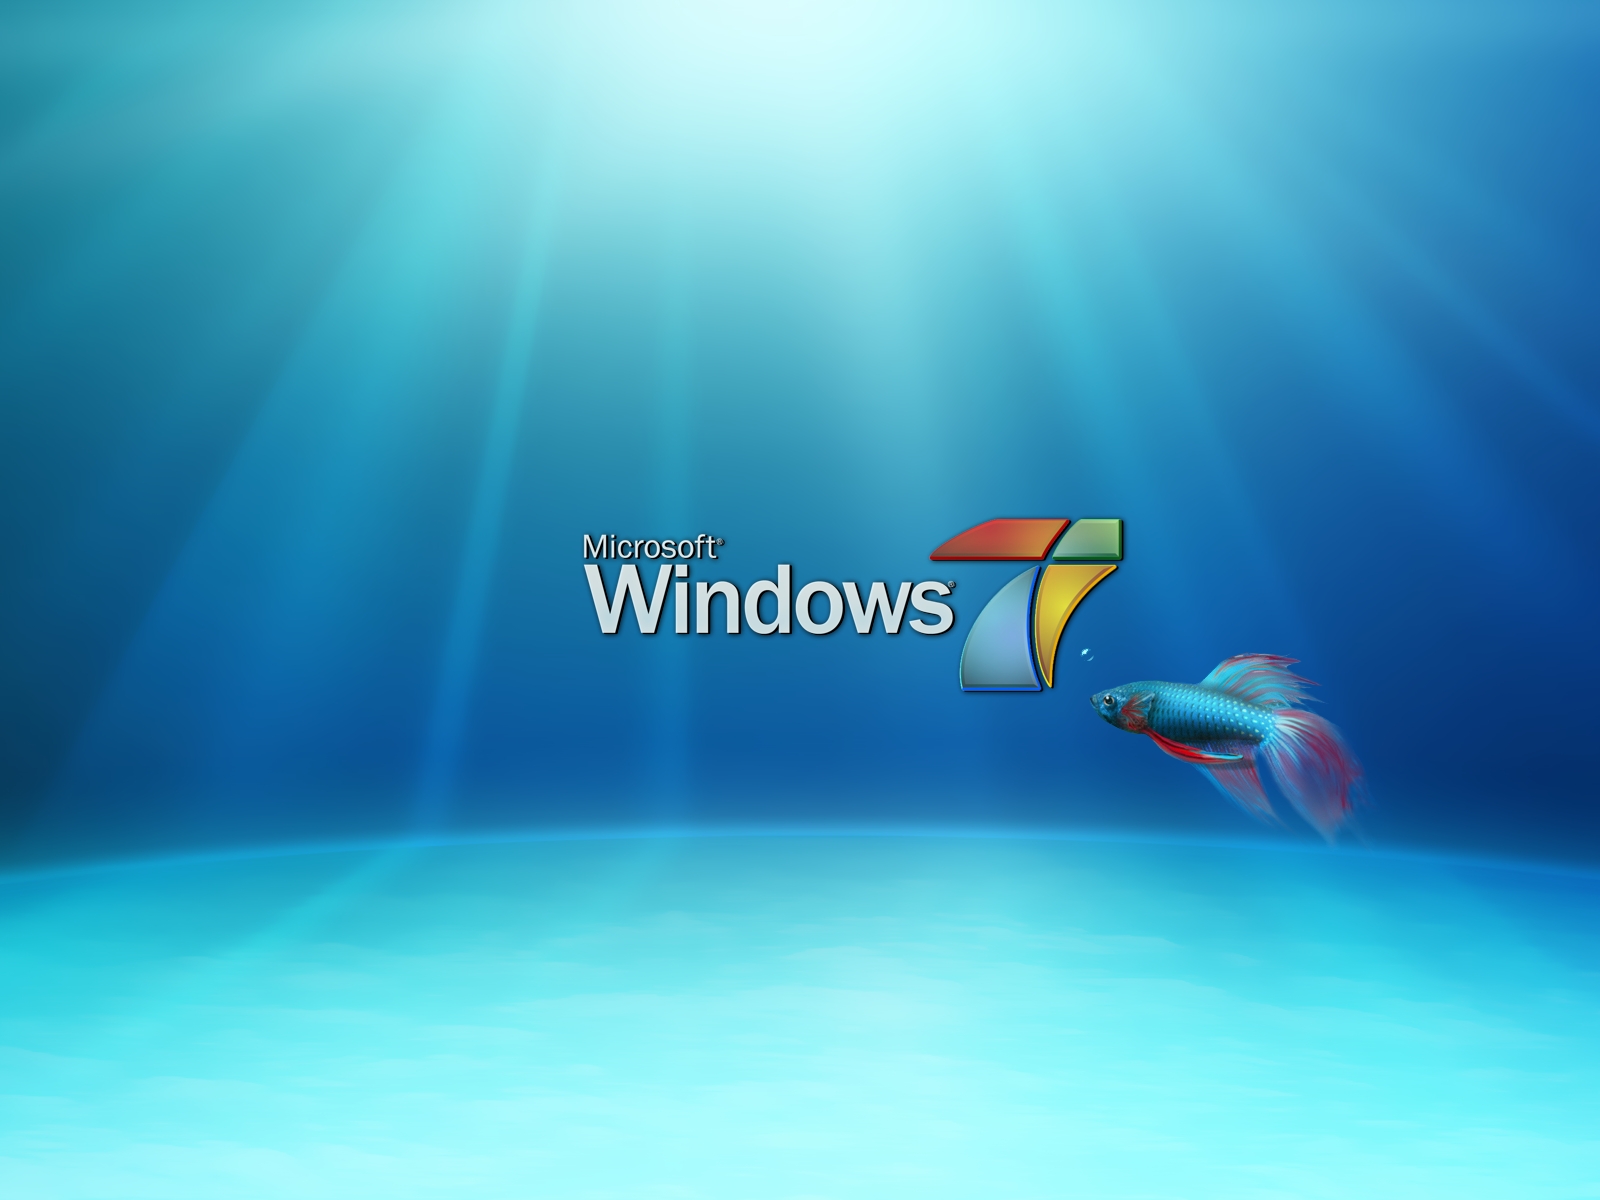 새로운 창 벽지,아쿠아,푸른,운영 체제,하늘,물